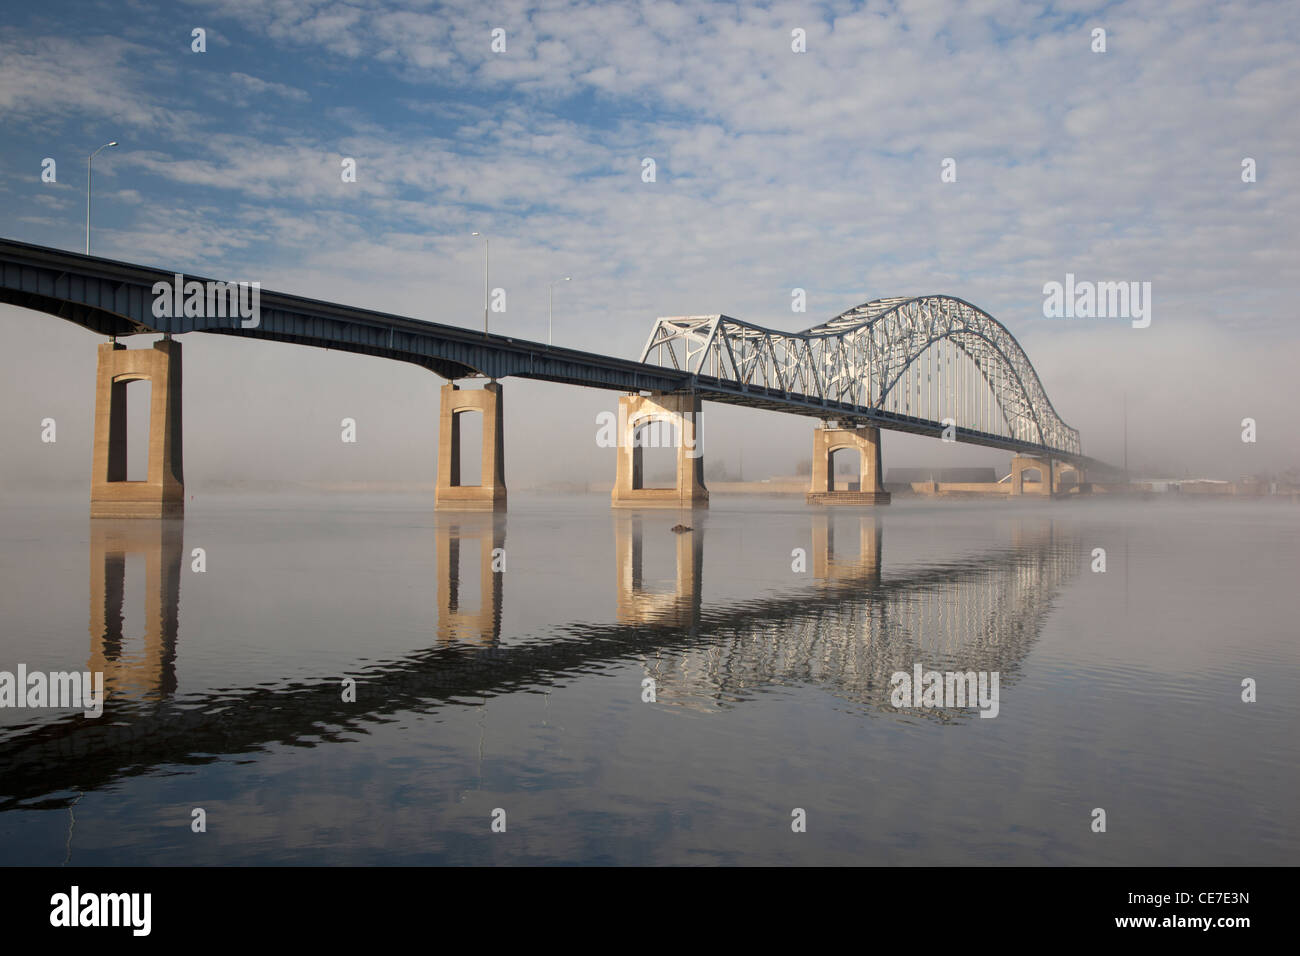 IA, Dubuque, Julien Dubuque Brücke überspannt den Mississippi River zwischen Iowa und Illinois Stockfoto